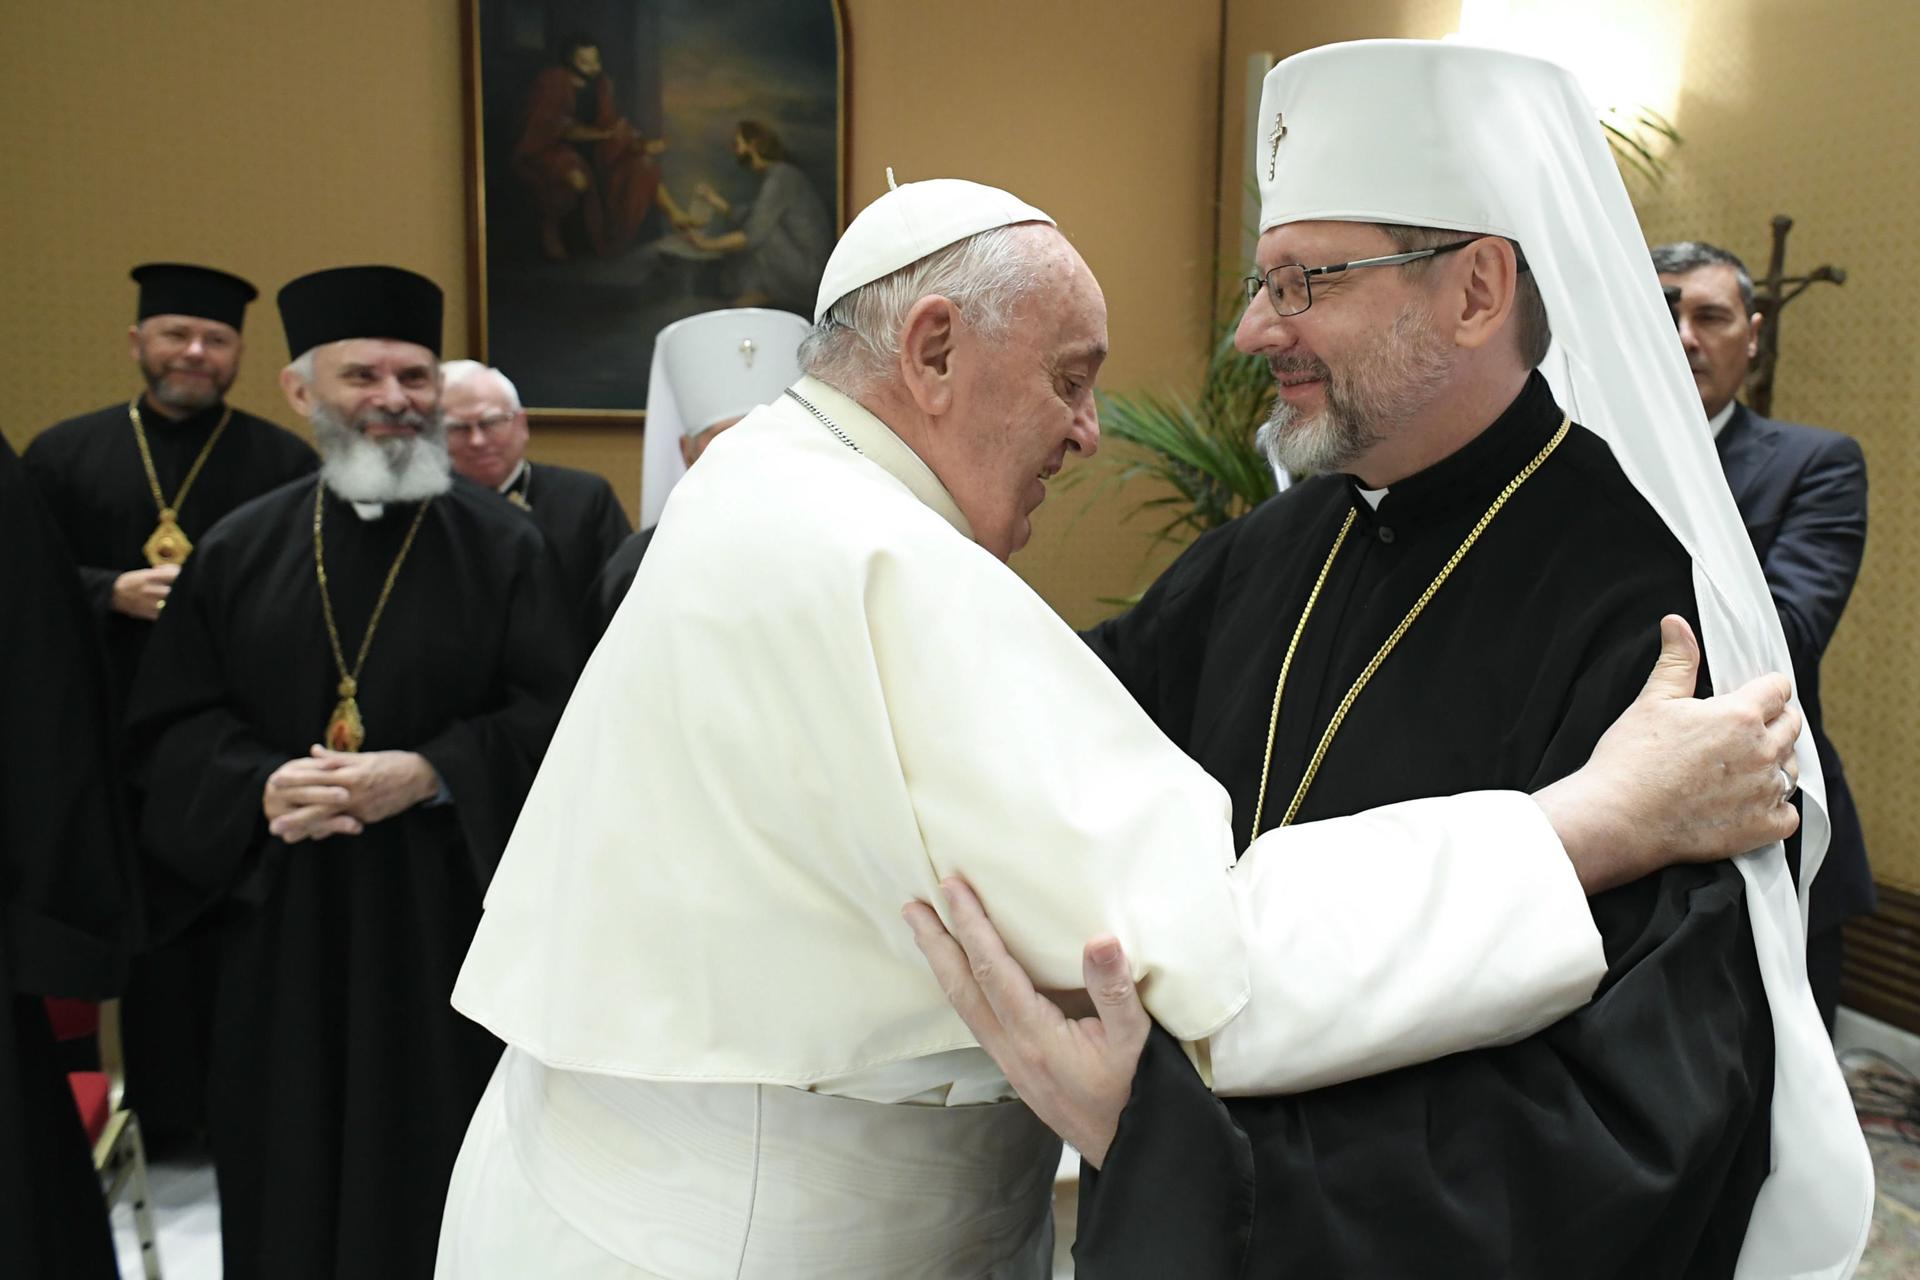 Obispos ucranianos dijeron al papa que algunas de sus palabras son dolorosas para Ucrania